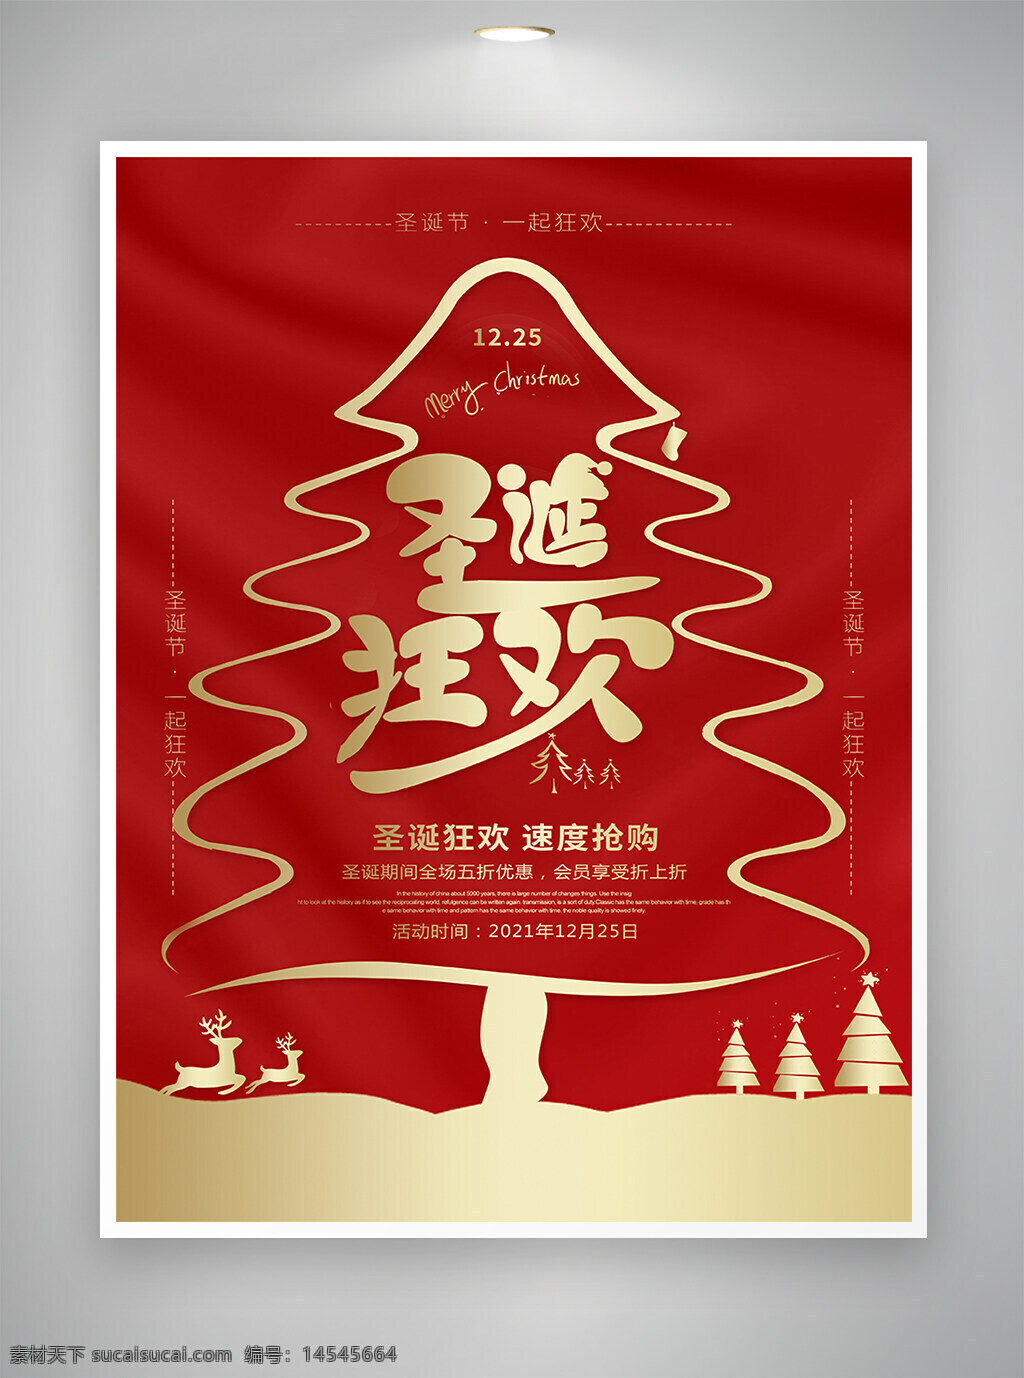 圣诞 圣诞节 圣诞海报 圣诞节海报 海报 促销海报 创意海报 红色 烫金风